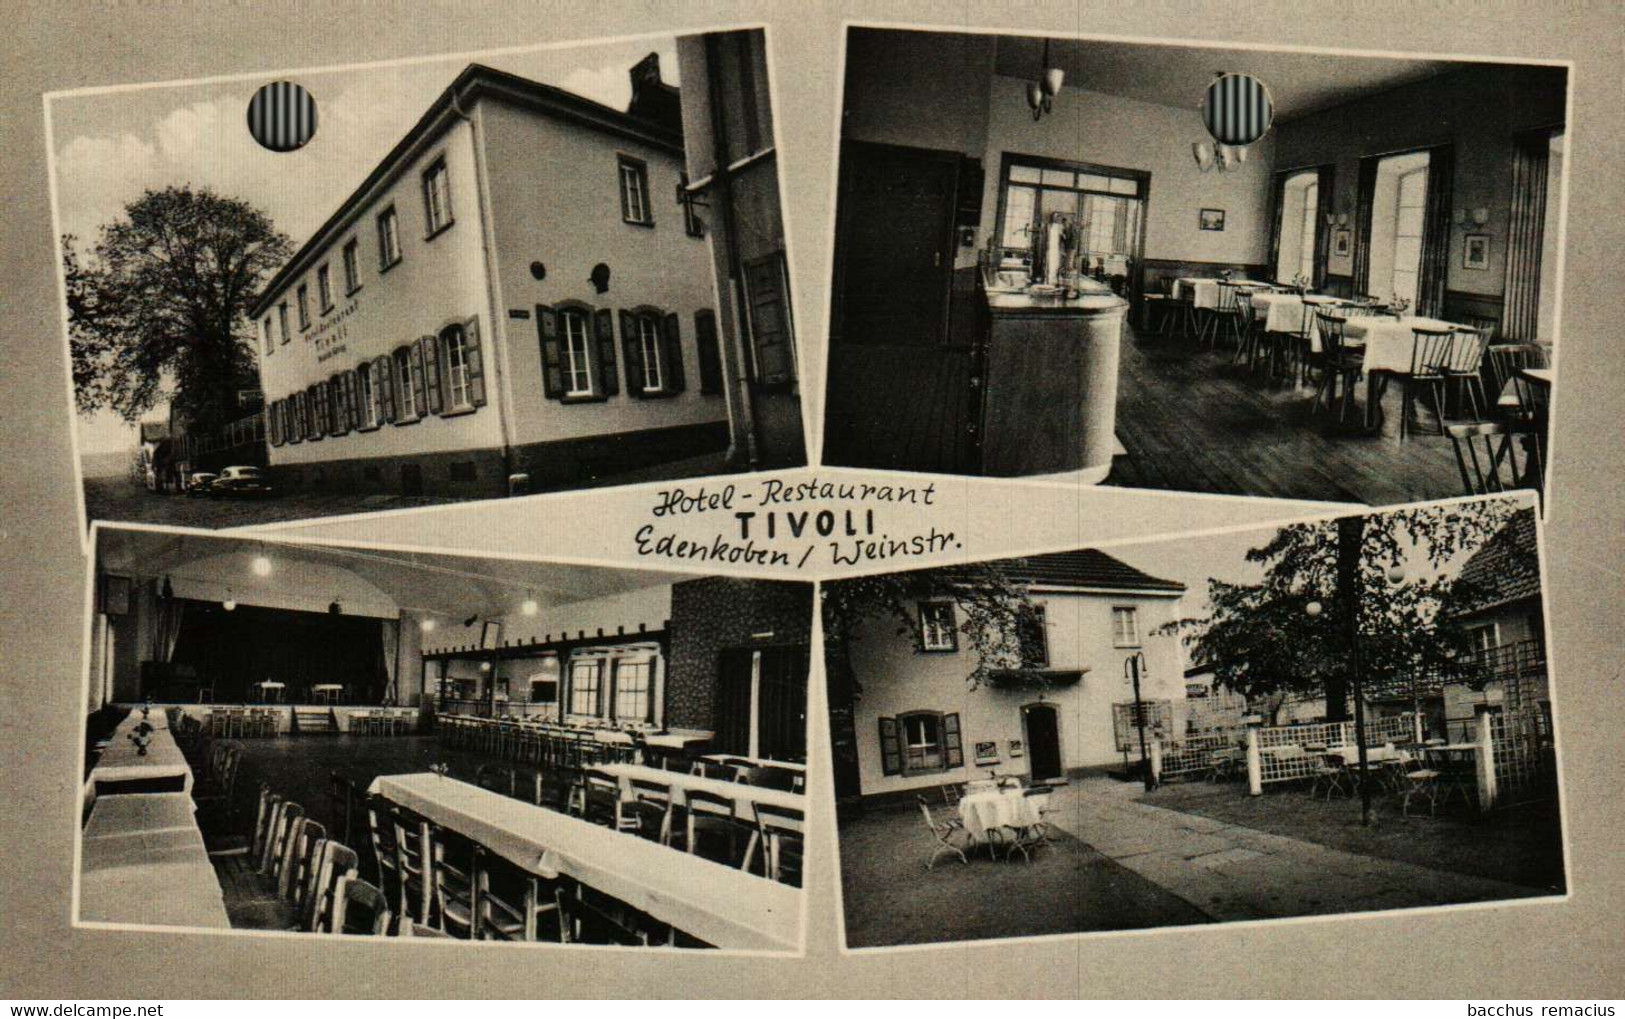 EDENKOBEN/WEINSTRASSE Hotel-Restaurant  TIVOLI  (2 Löcher) - Edenkoben